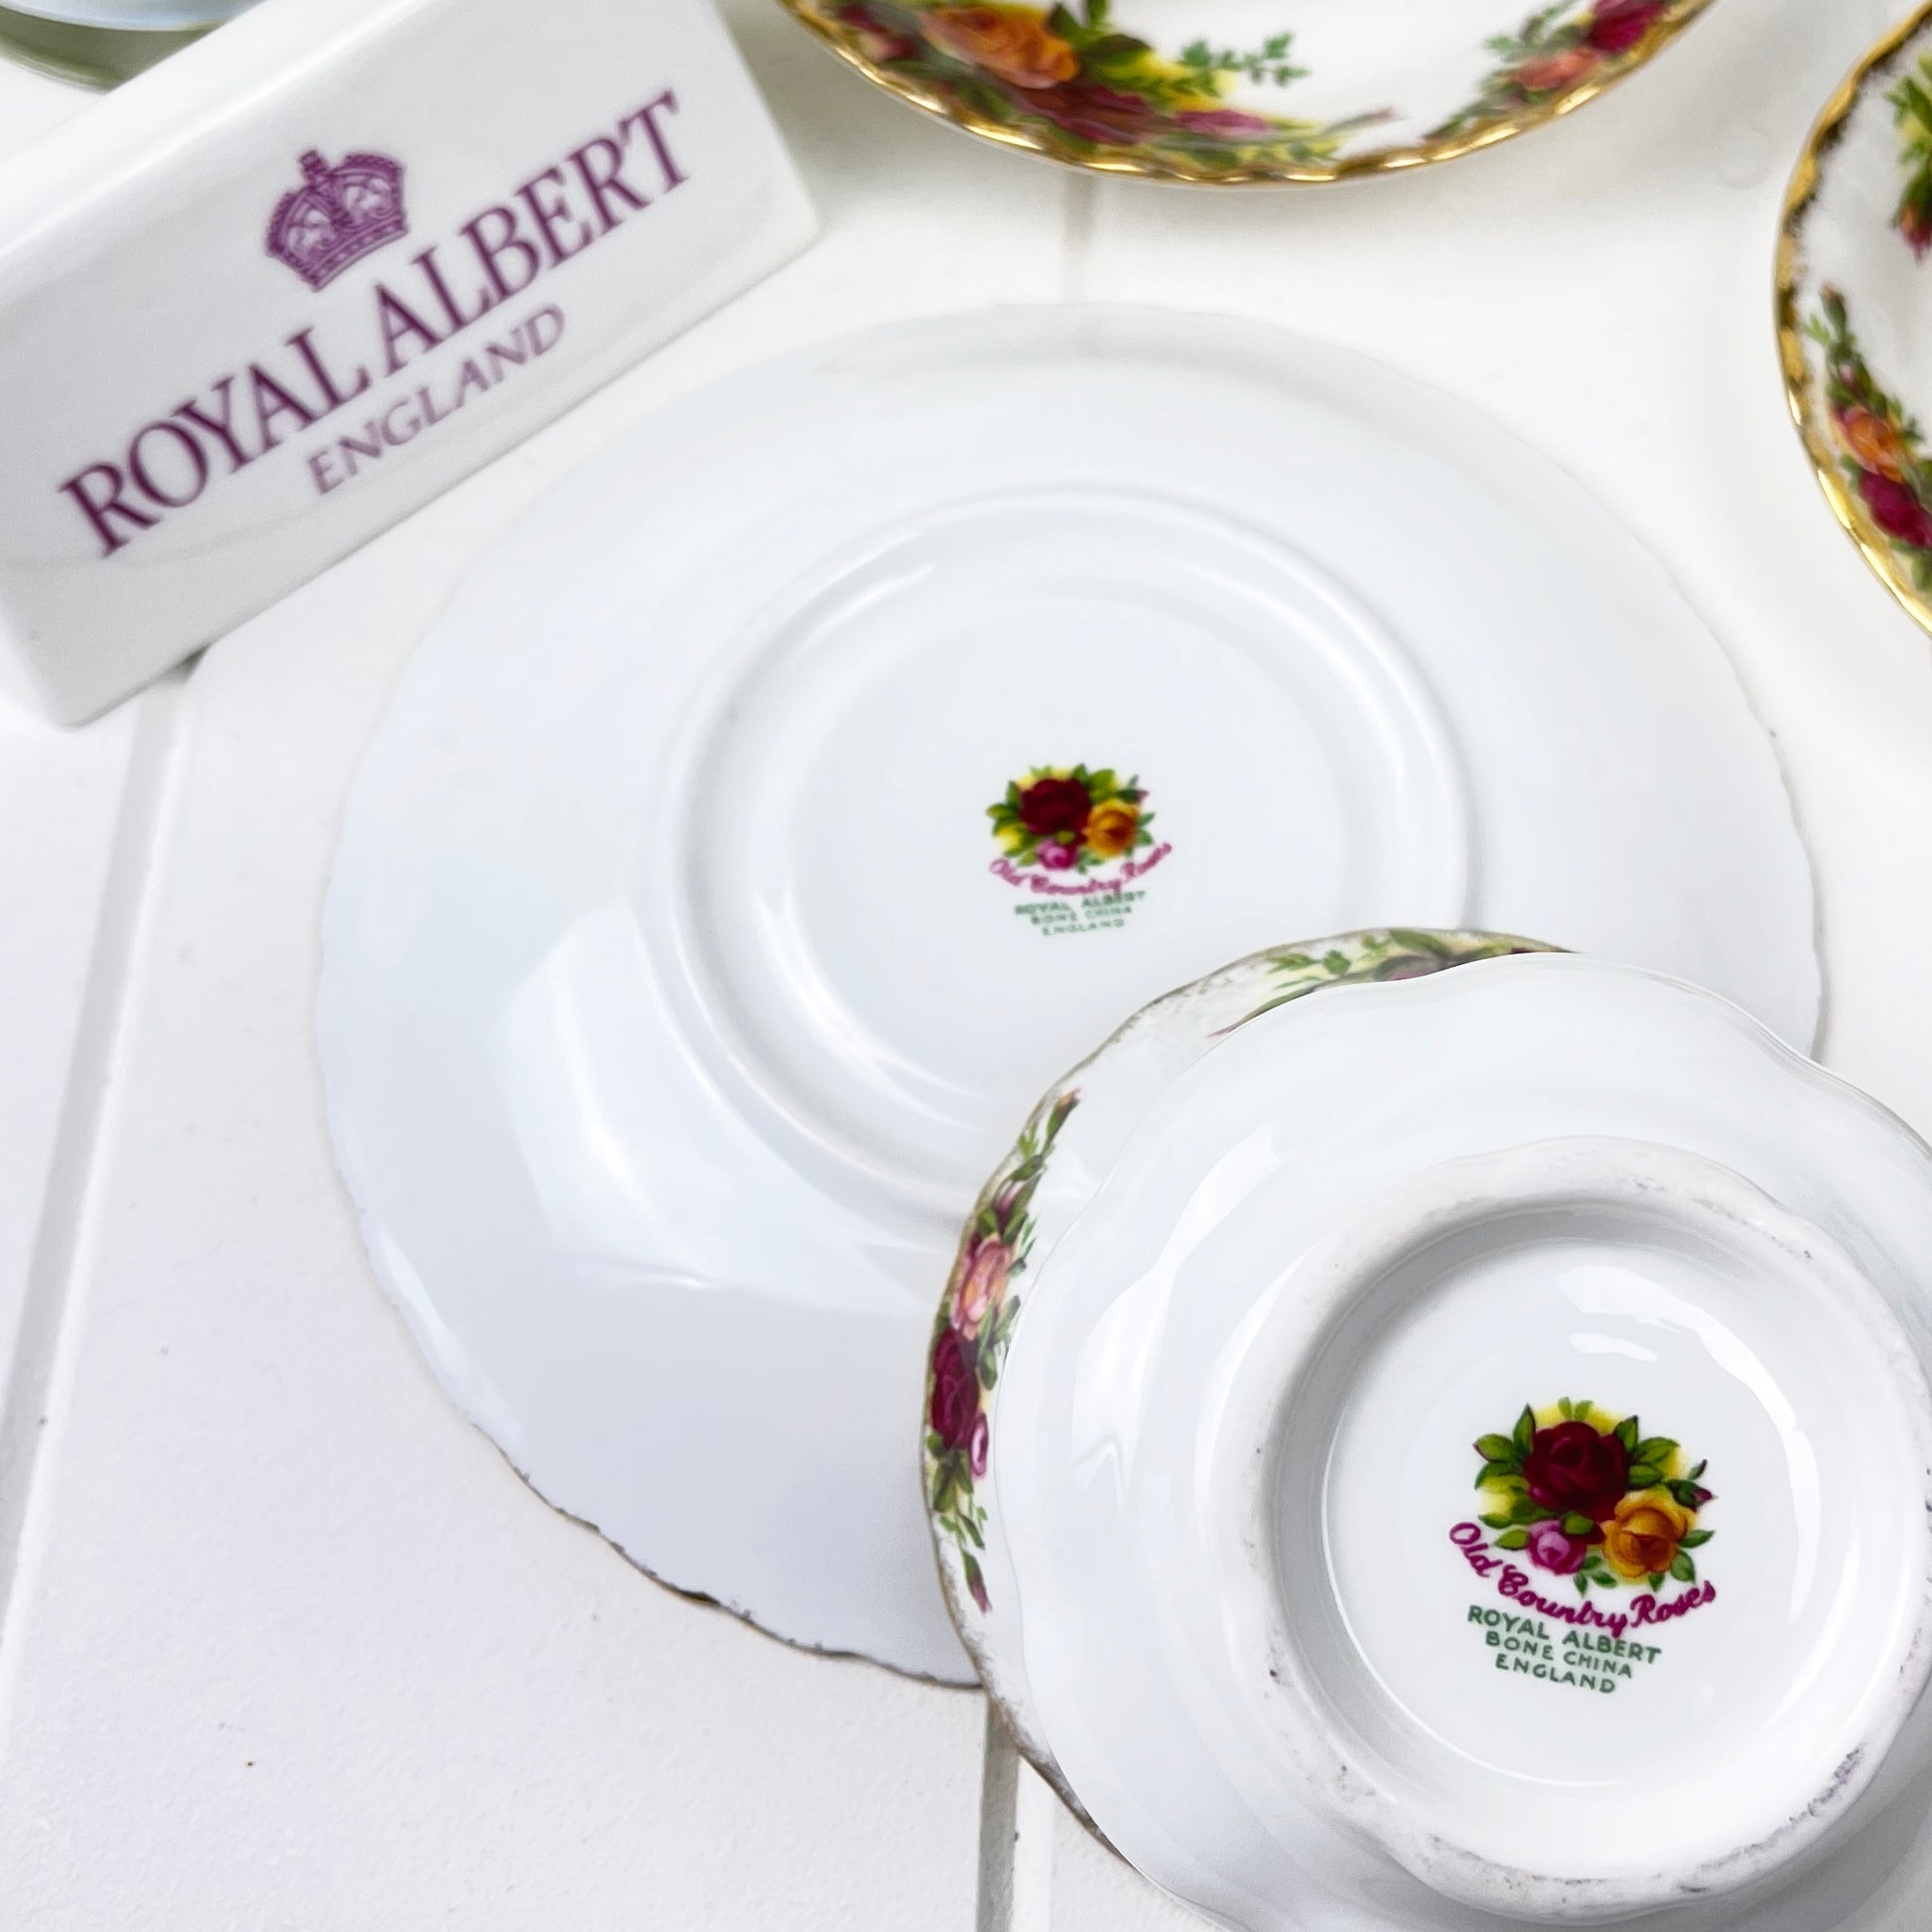 Royal Albert Vintage Old Country Roses Large Breakfast / Gentleman's Cup Duo